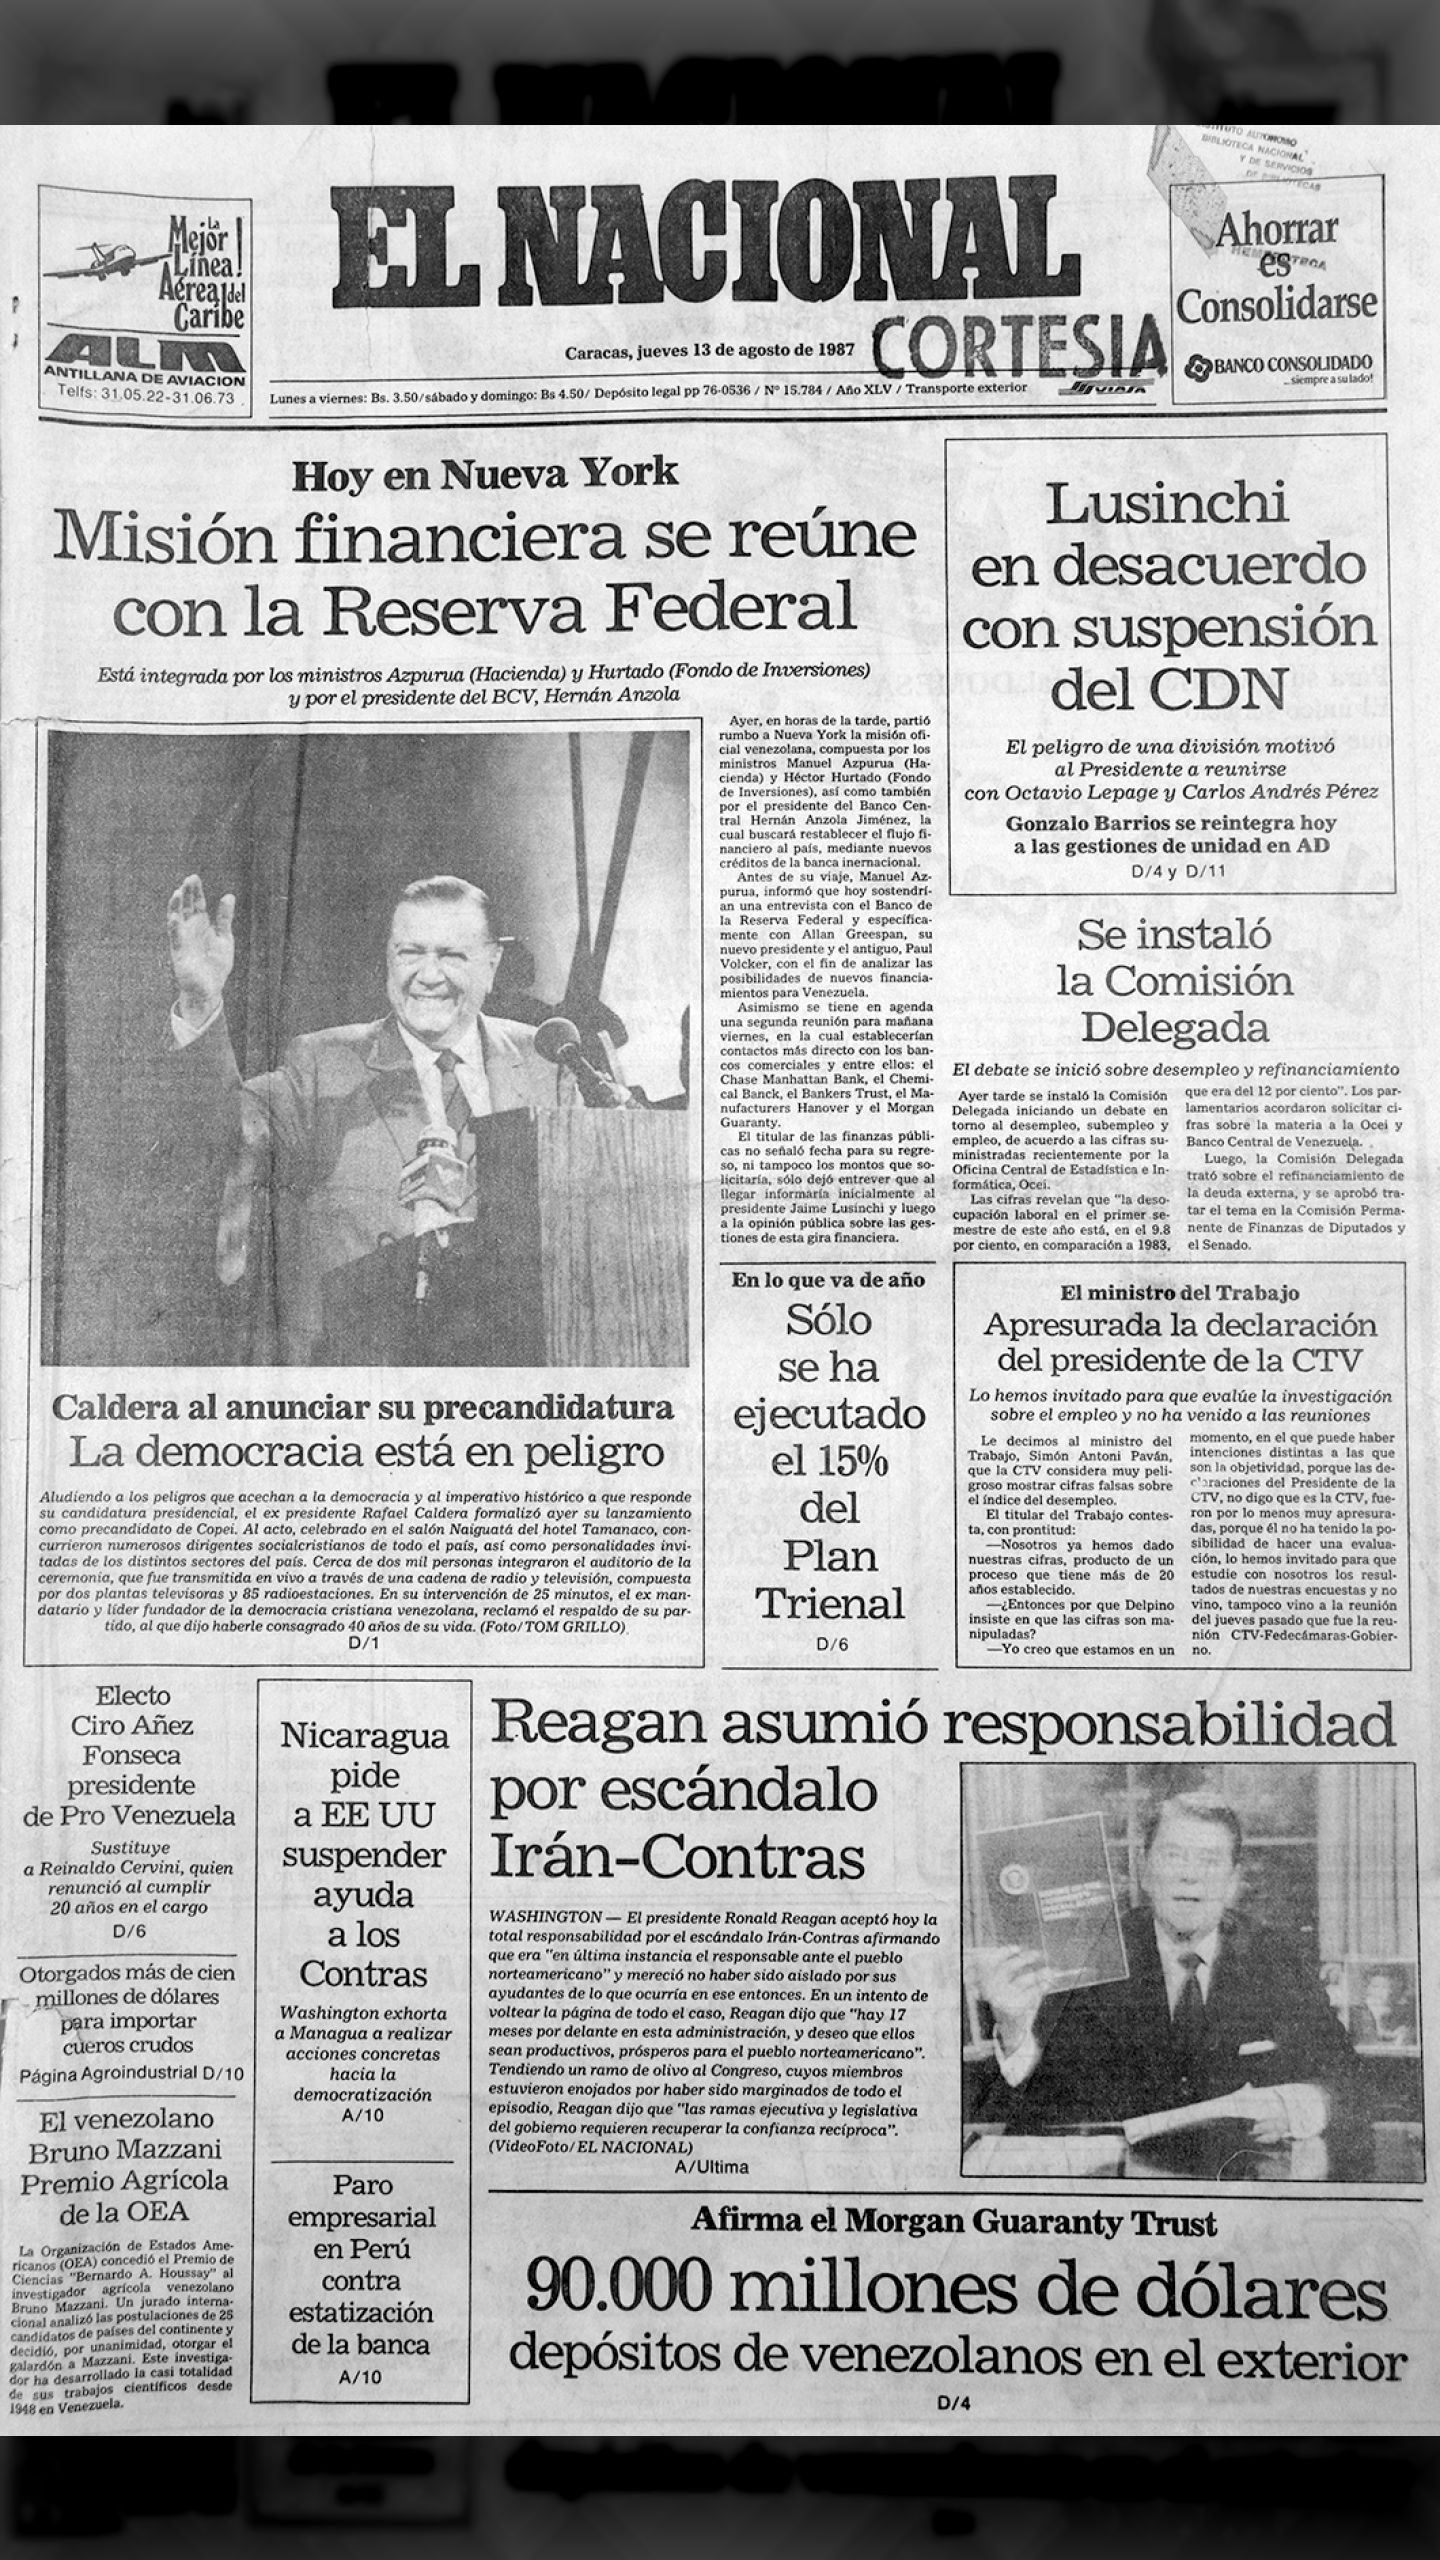 Reagan asumió responsabilidad por el escándalo Irán – Contras (El Nacional, 13 de agosto de 1987)